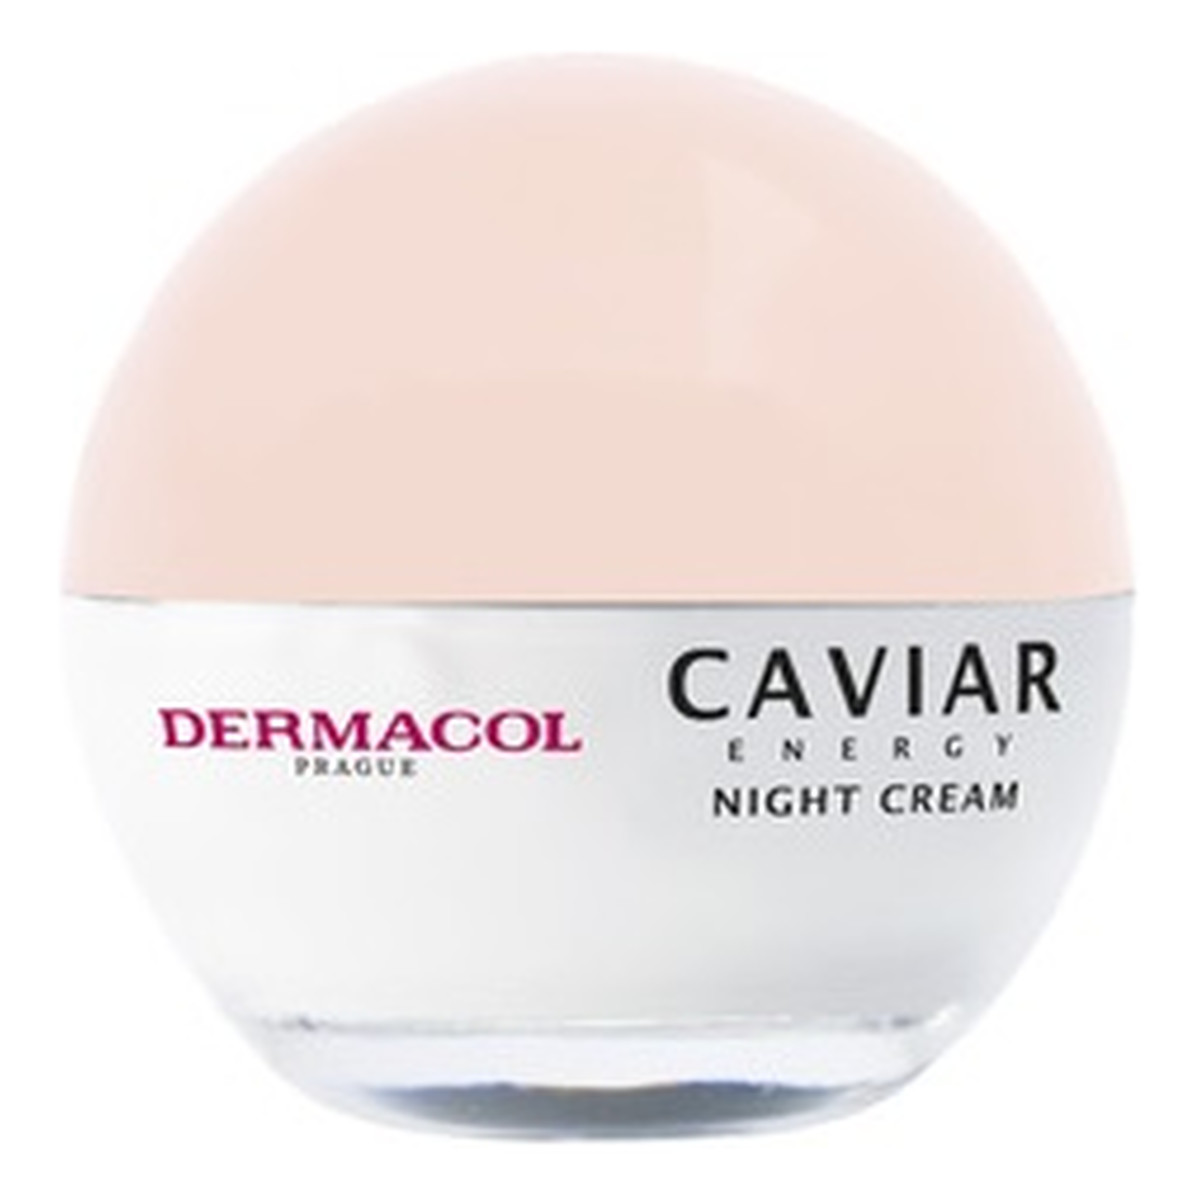 Dermacol Caviar Energy Night Cream przeciwstarzeniowy Krem na noc 50ml